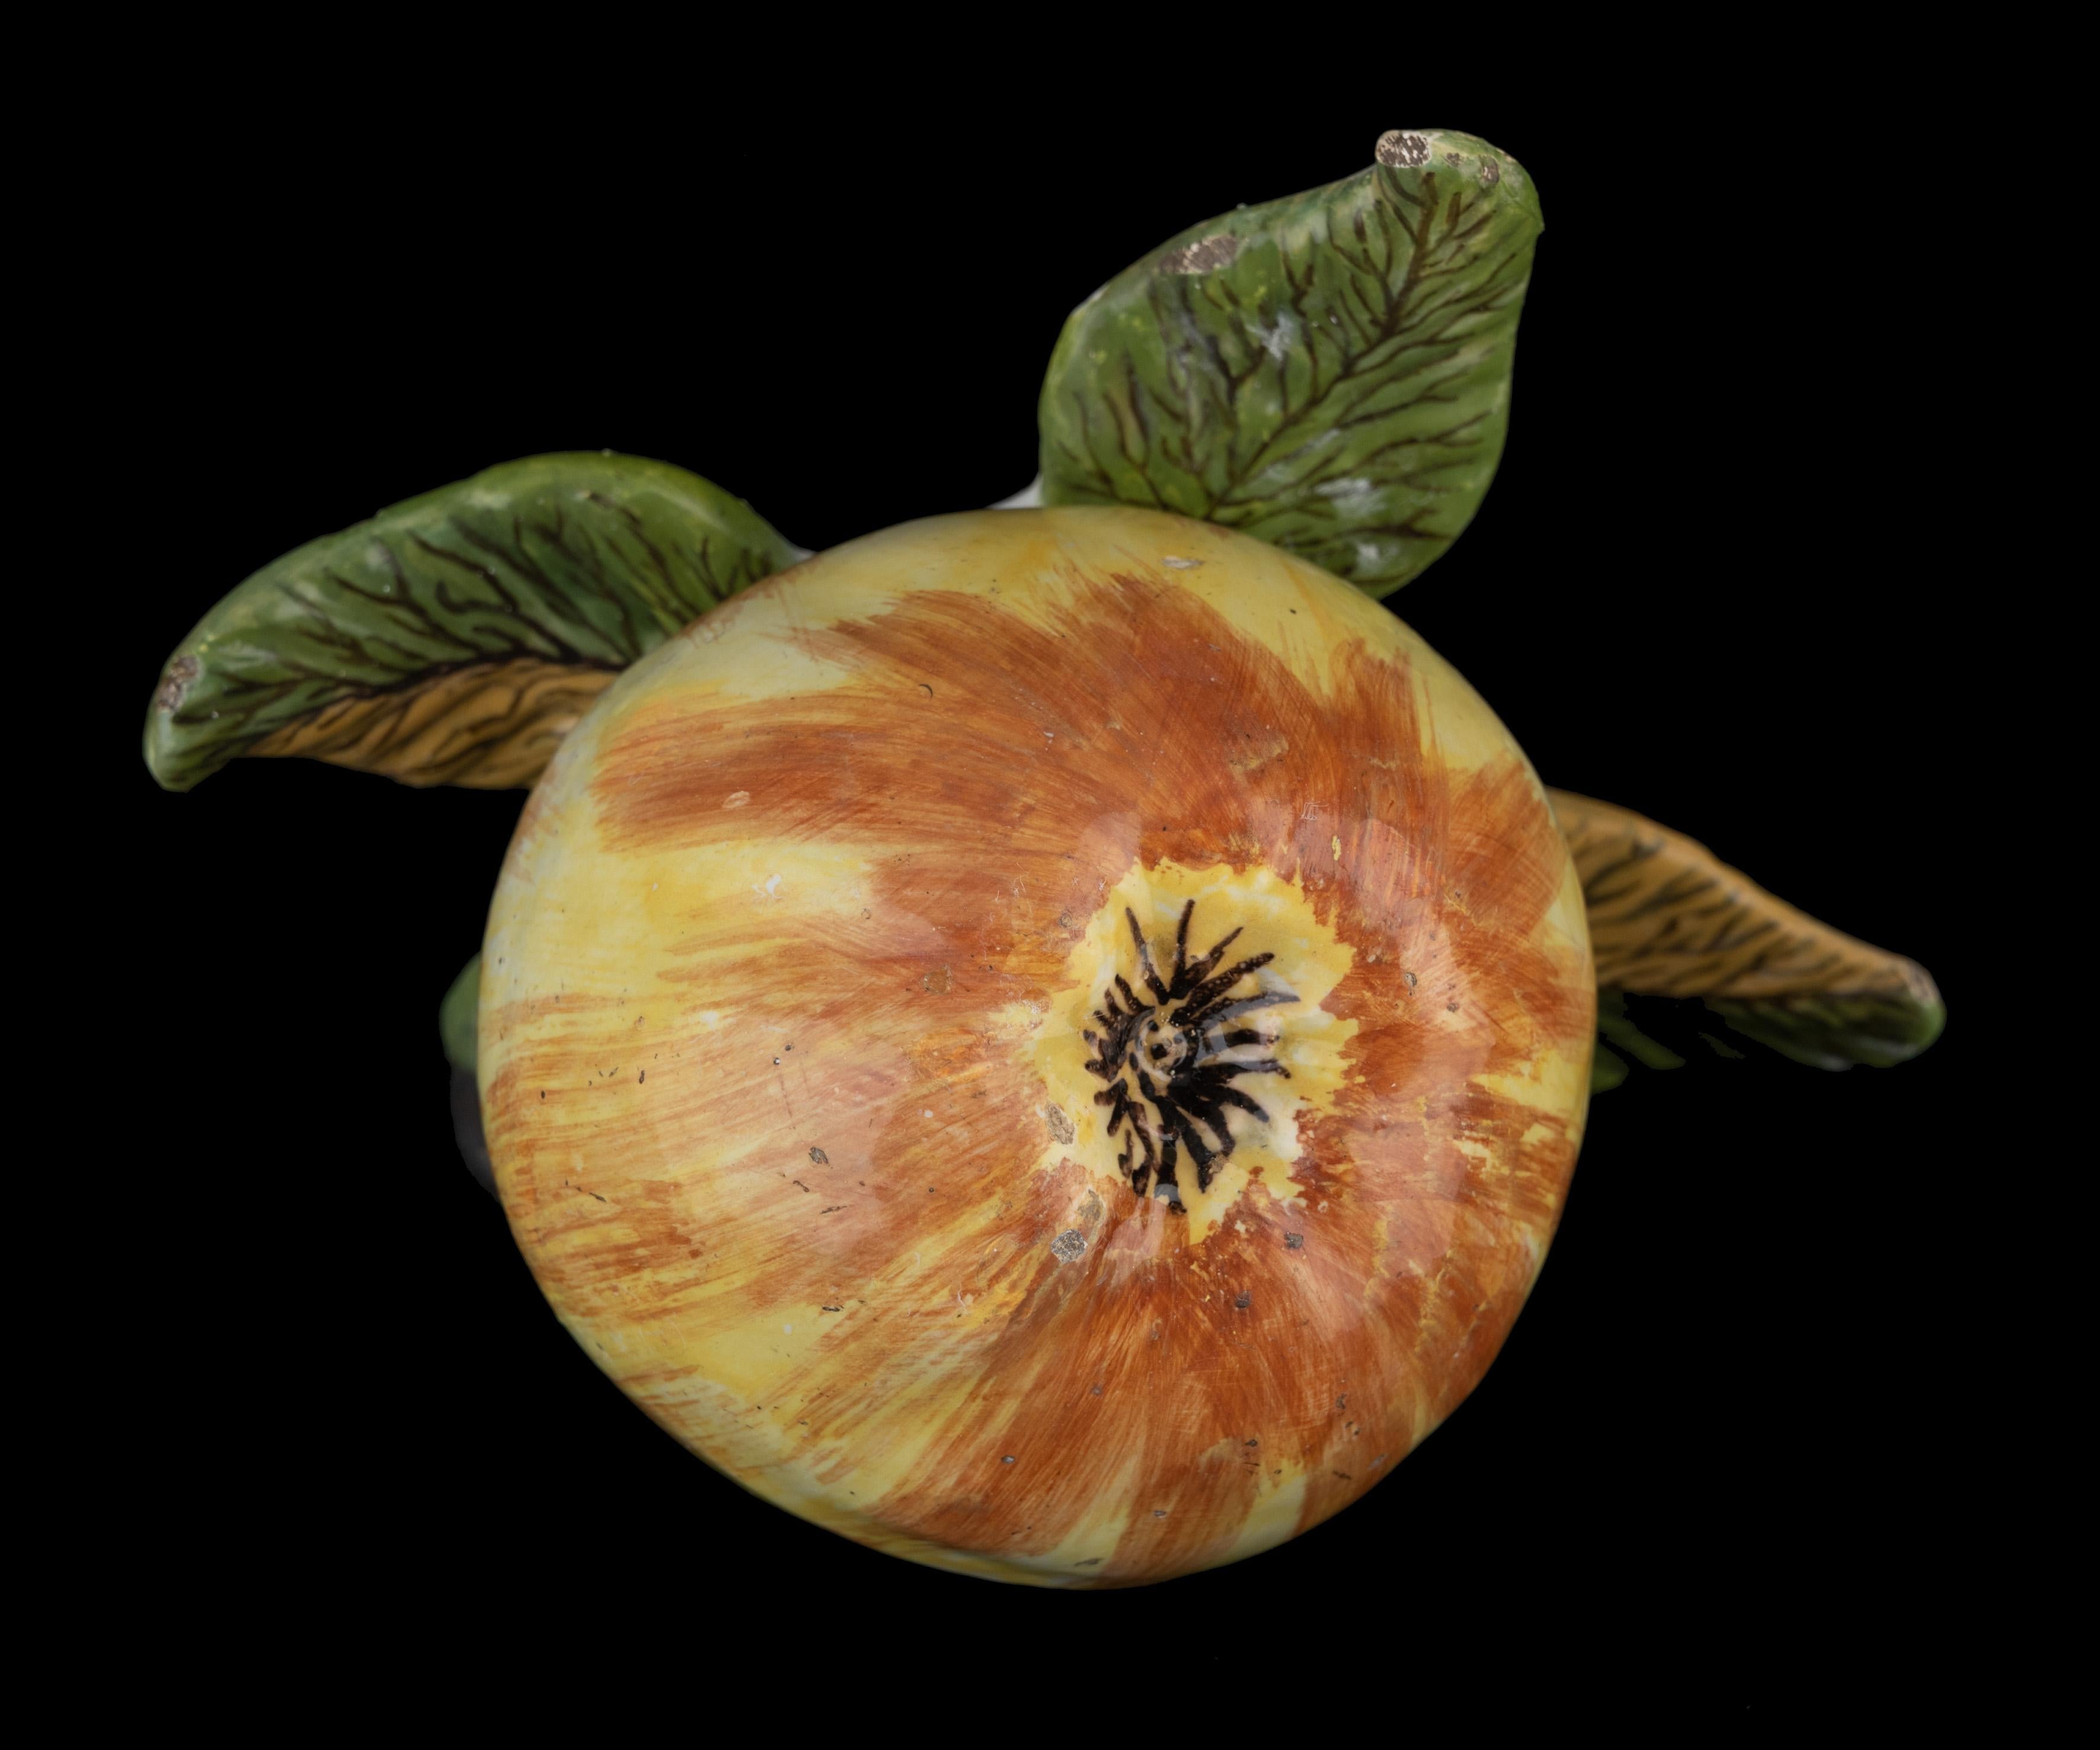 Niederländische Delfter Keramik Apfel Delft, 1750-1780

Der Apfel mit Stiel ist auf einem Sockel aus Blättern modelliert und in realistischen Farben bemalt.  
Abmessungen: Höhe 8 cm, Länge 14,5 cm, Breite 12 cm. 

In der zweiten Hälfte des